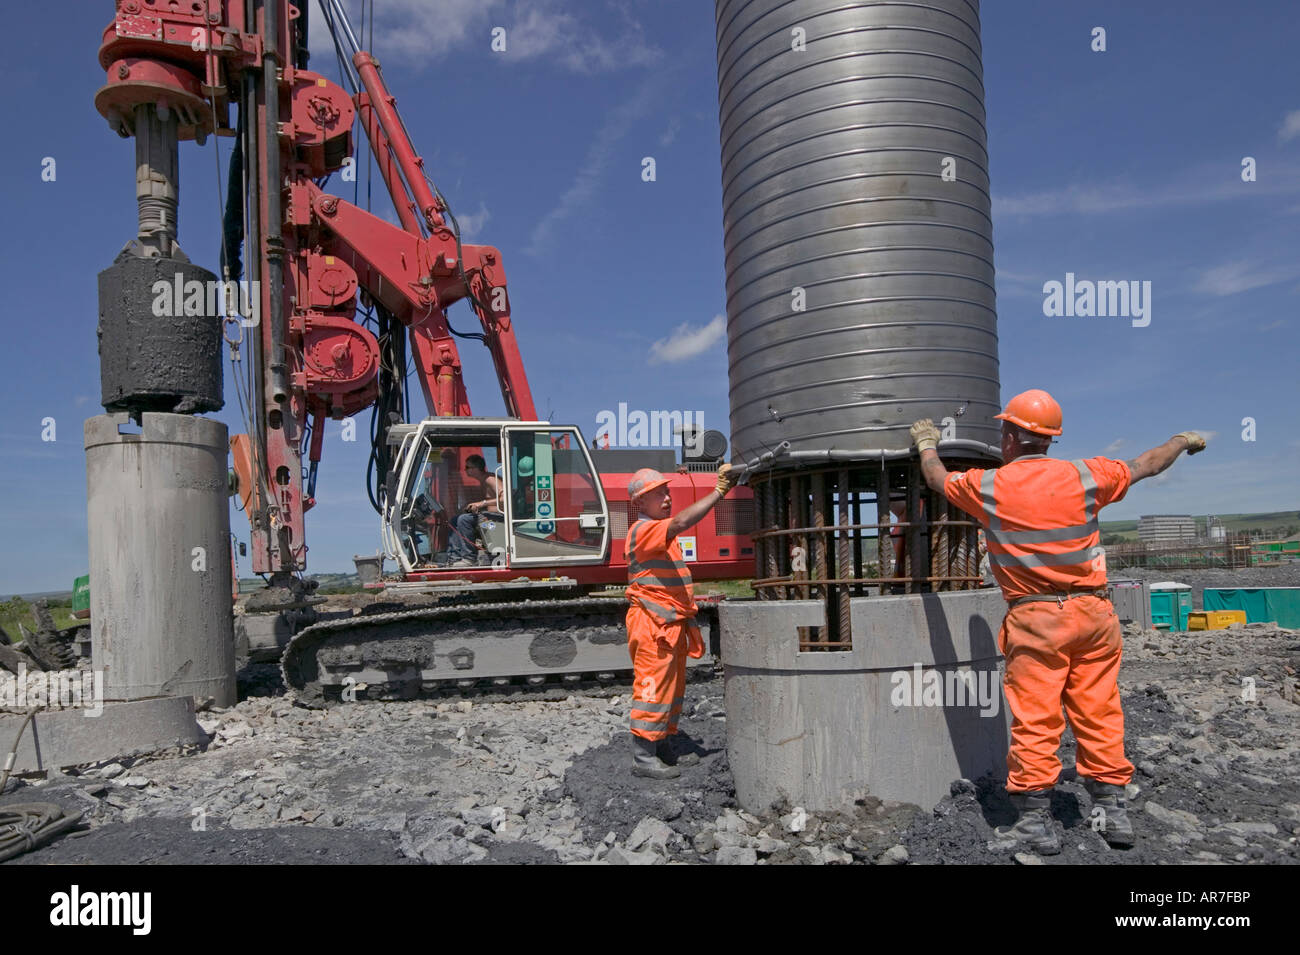 Installer les travailleurs en cage acier renforcé pile excavé. Dans l'arrière-plan, un énorme butin de piling rig soulève une autre pile Banque D'Images